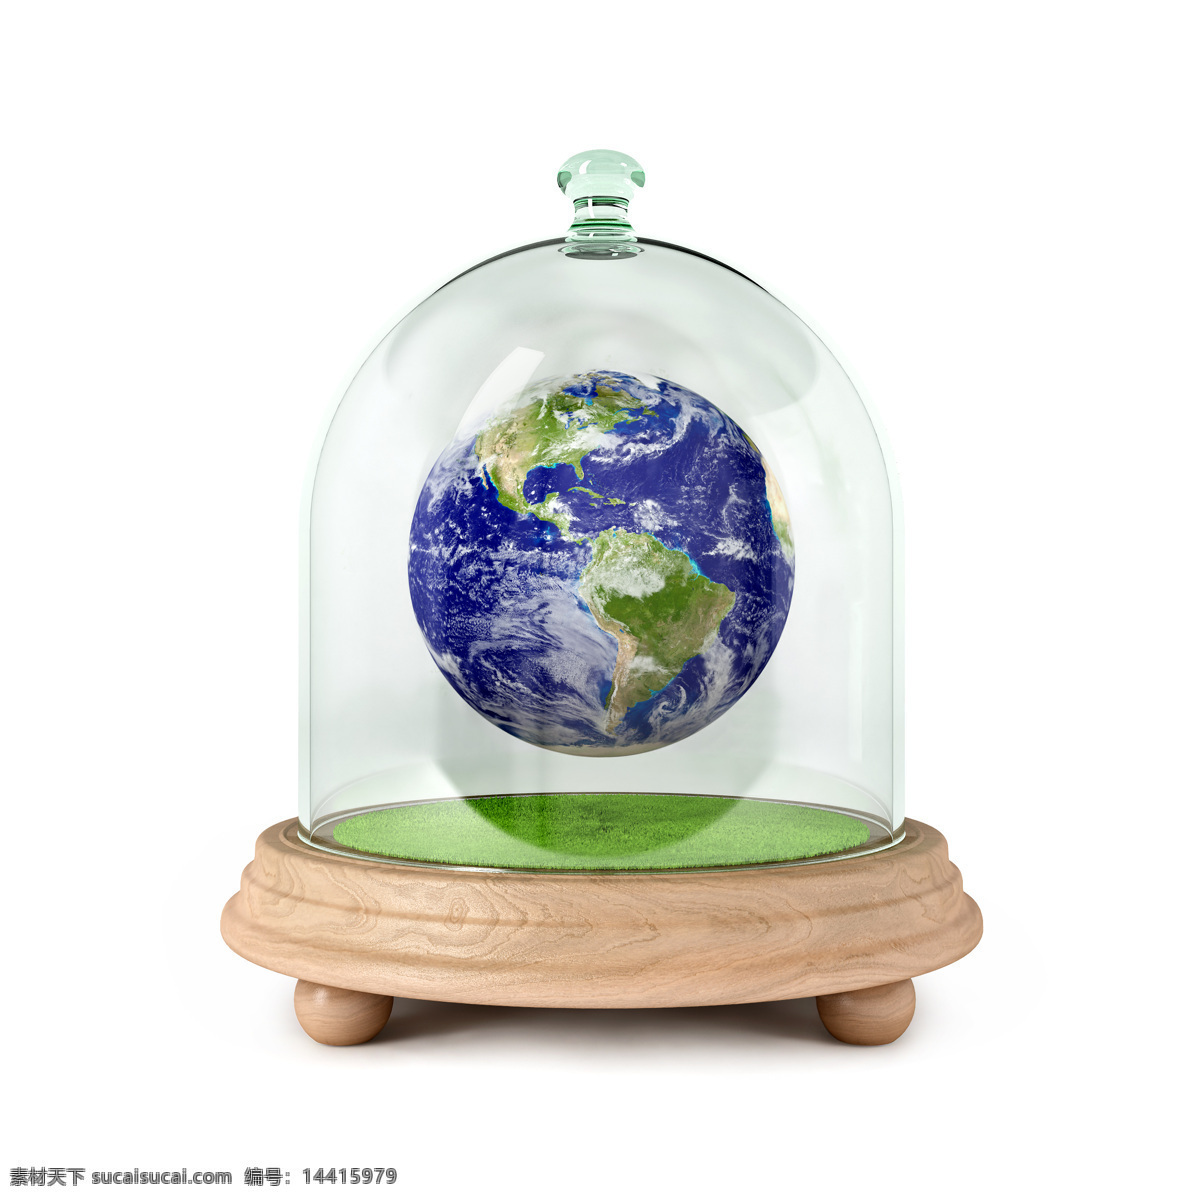 玻璃罩 中 地球 保护地球 创意图片 高清图片 环保 明